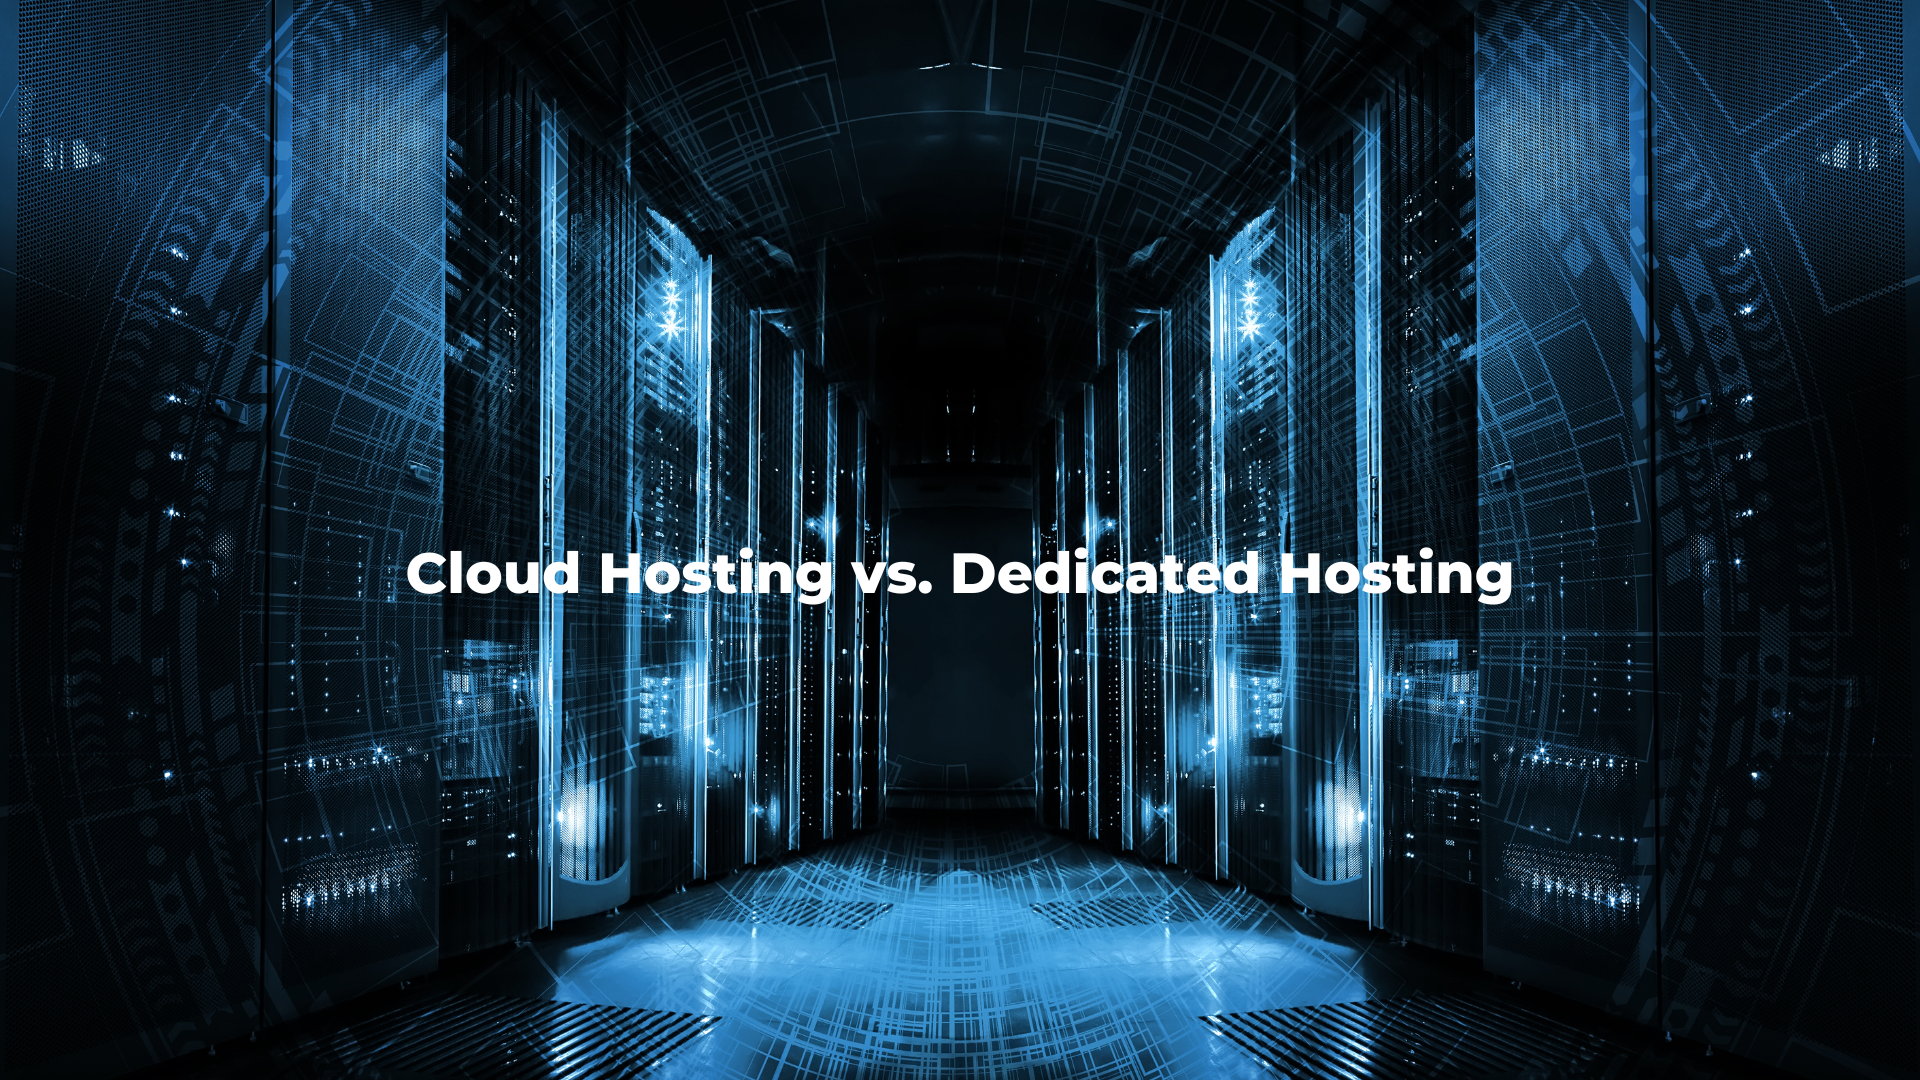 Cloud Hosting vs. Dedicated Hosting